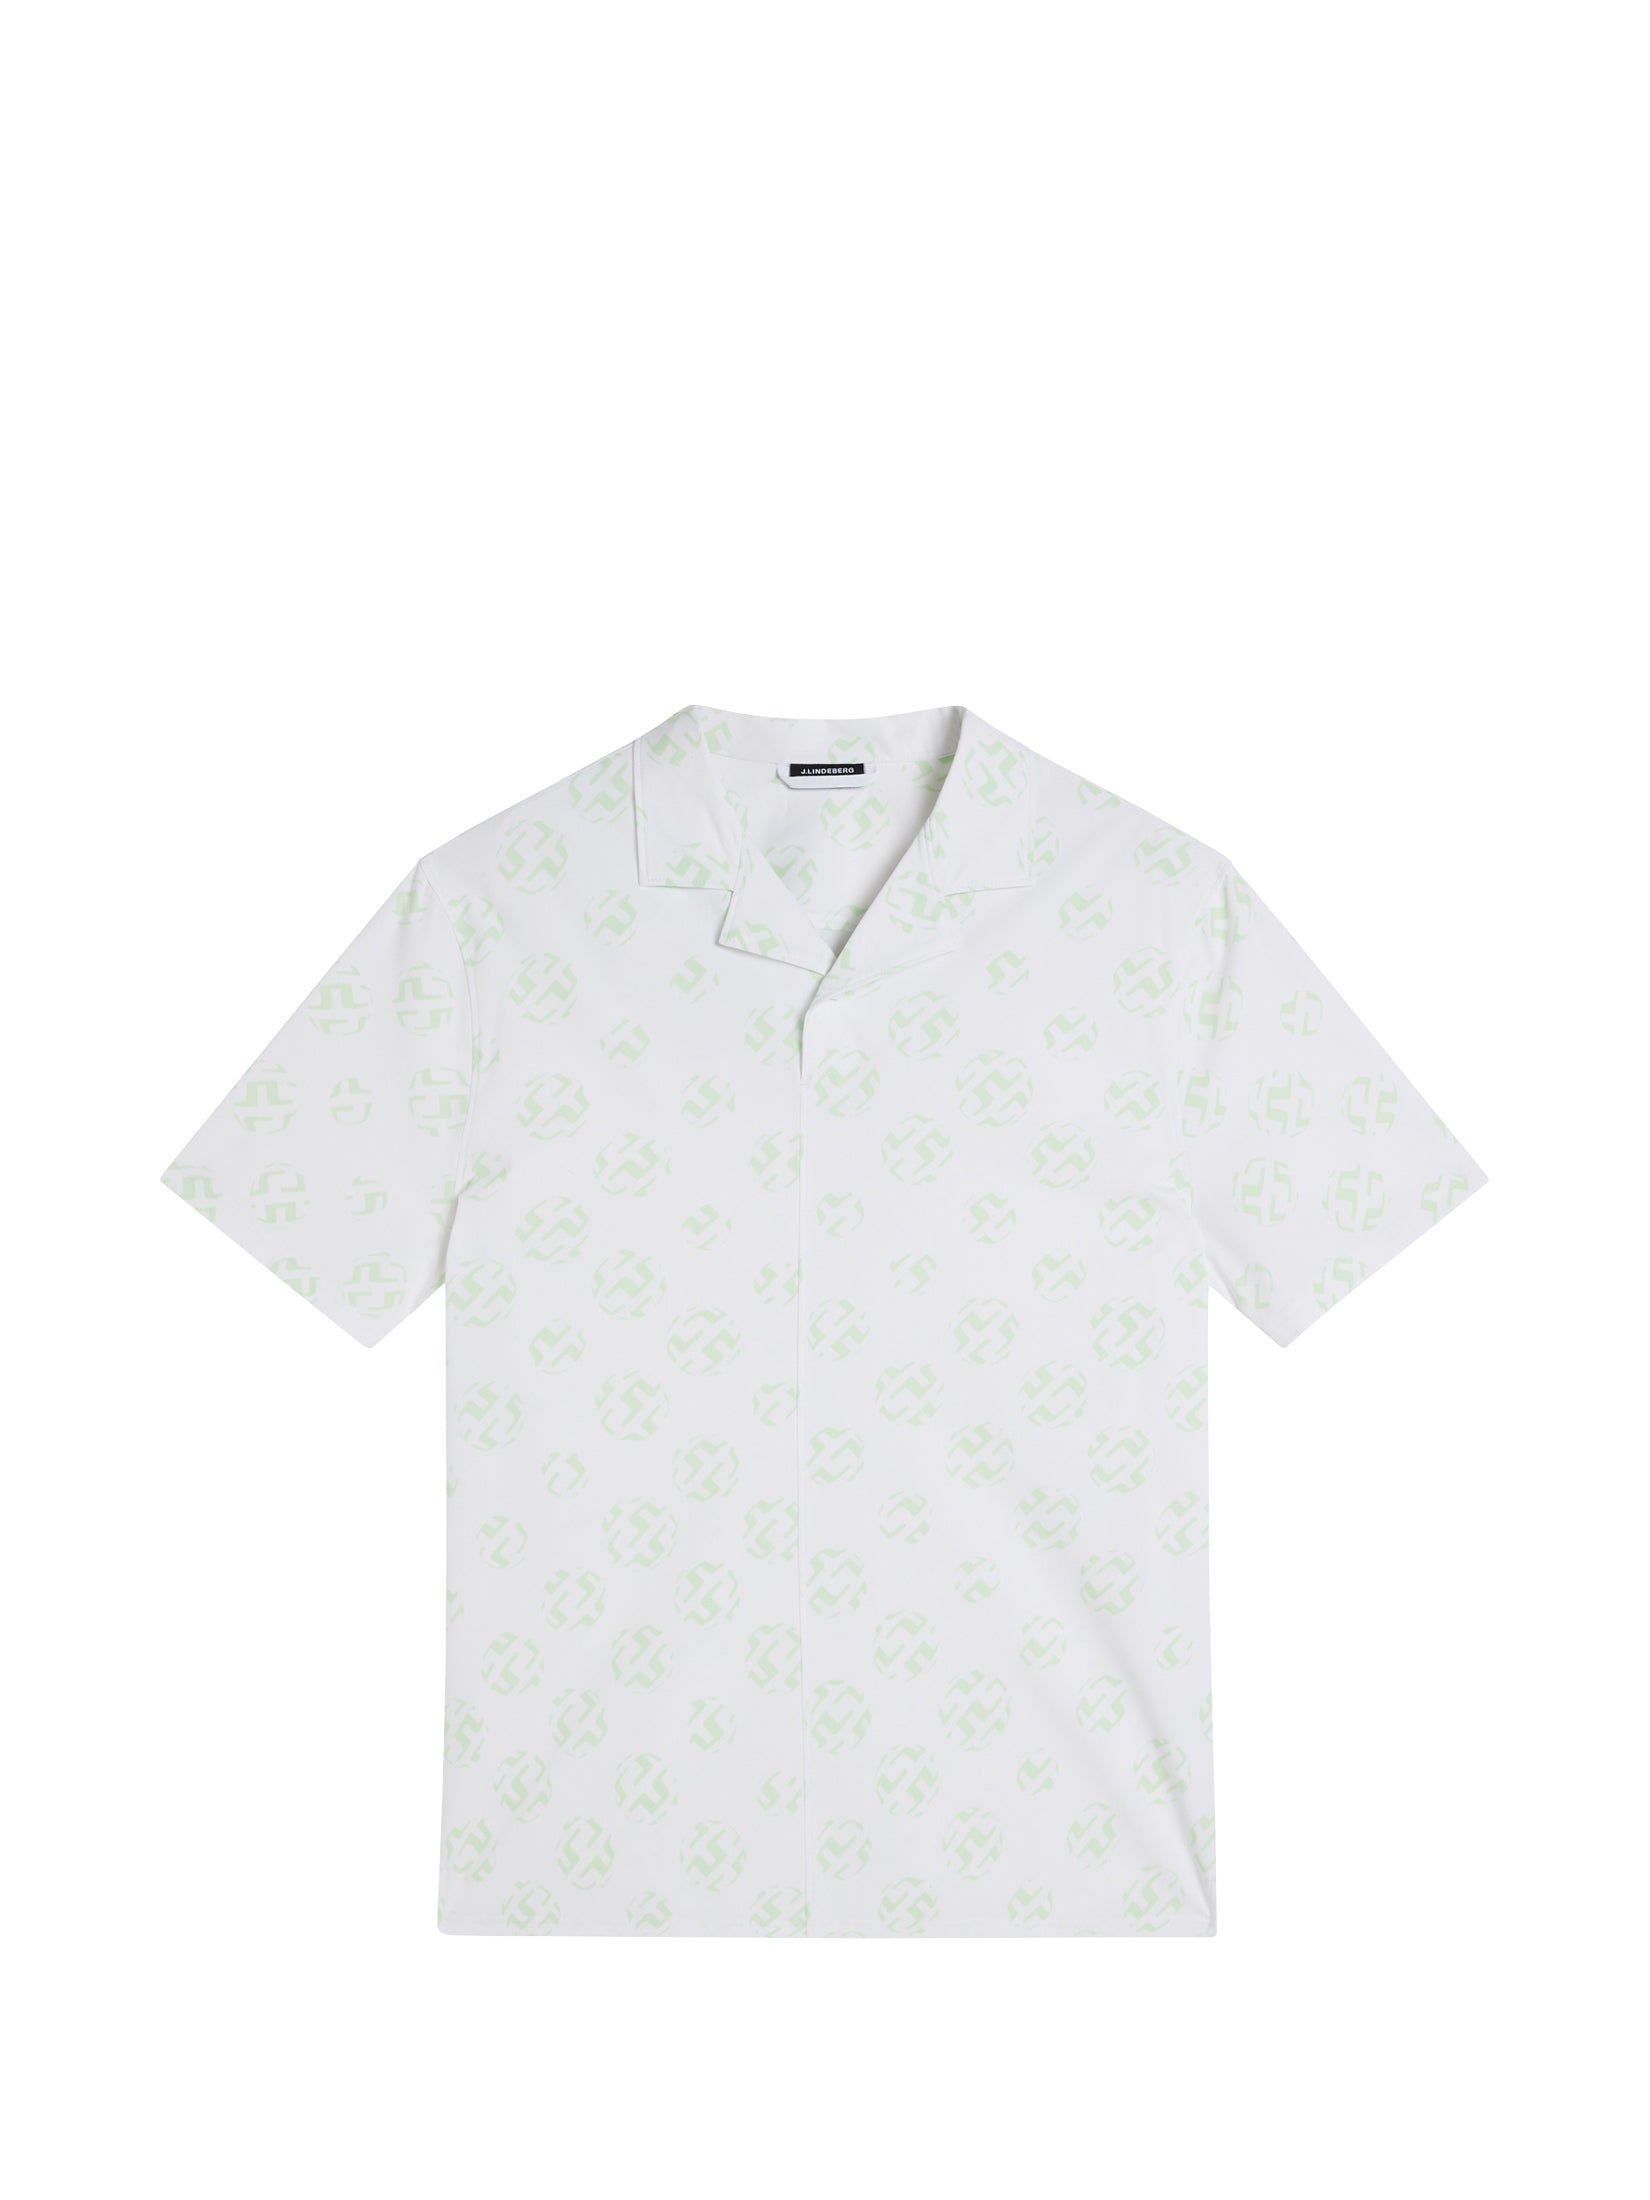 Louis Vuitton Men's All Over Print Polo Shirt